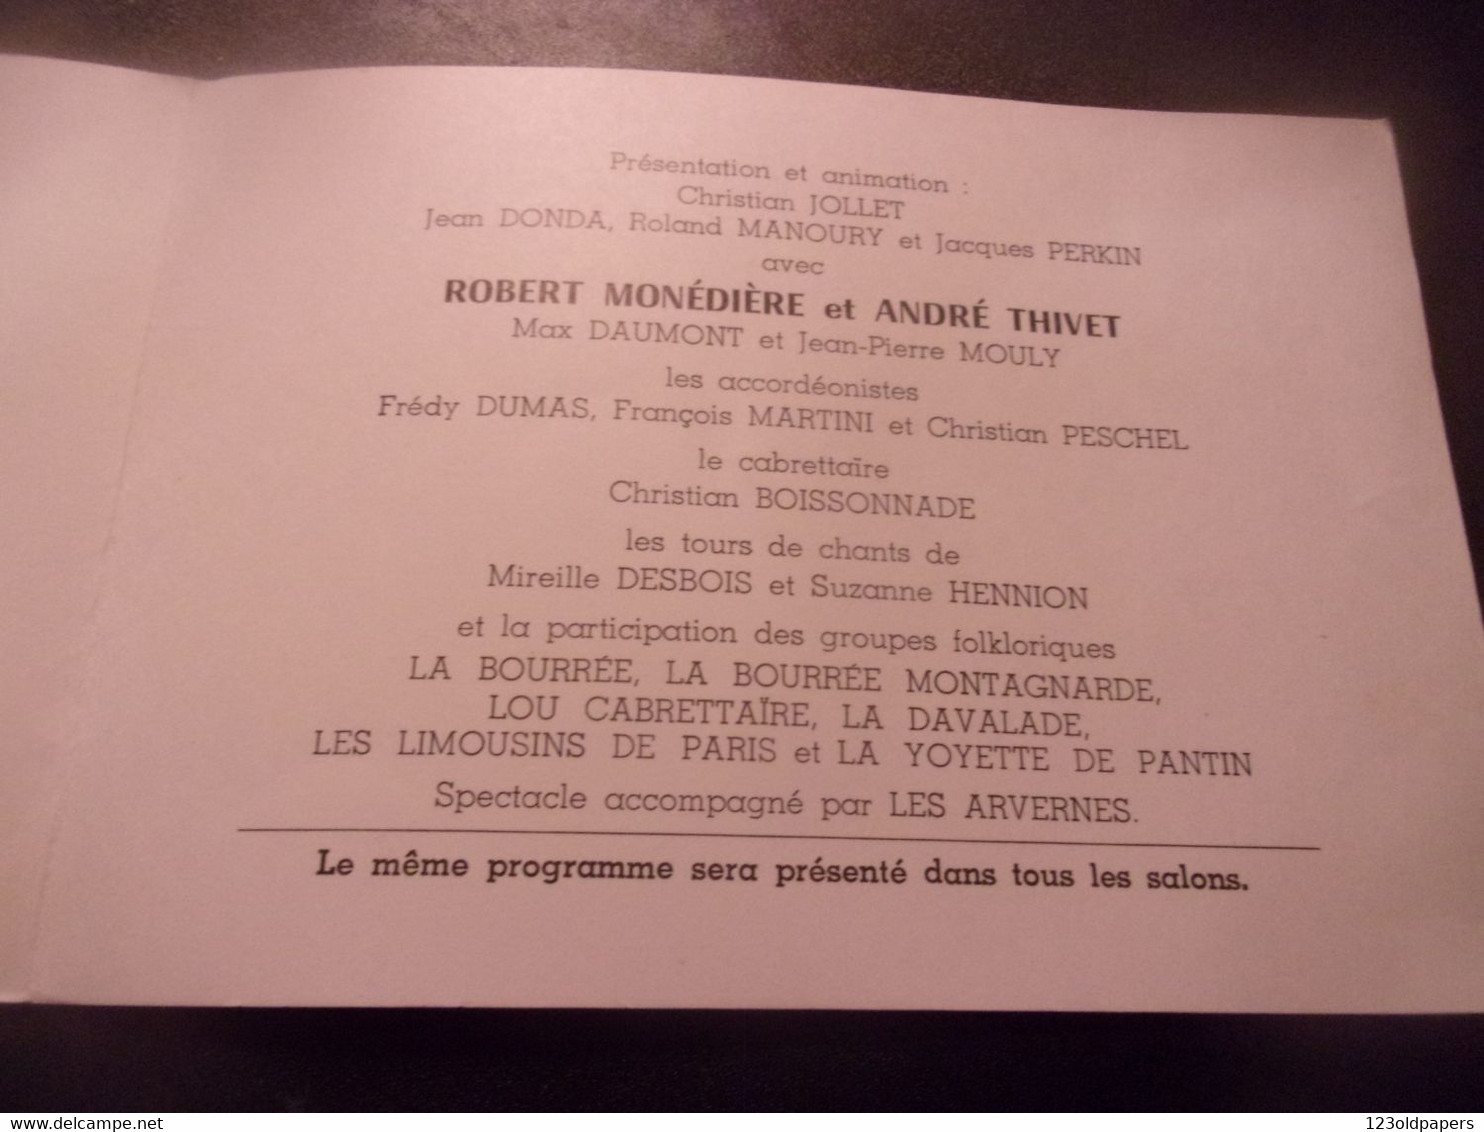 ♥️ JACQUES CHIRAC 1982 MAIRE PARIS INVITATION ACCORDEON ET FOLKLORE DU MASSIF CENTRAL FREDY DUMAS PESCHEL ... - Programs